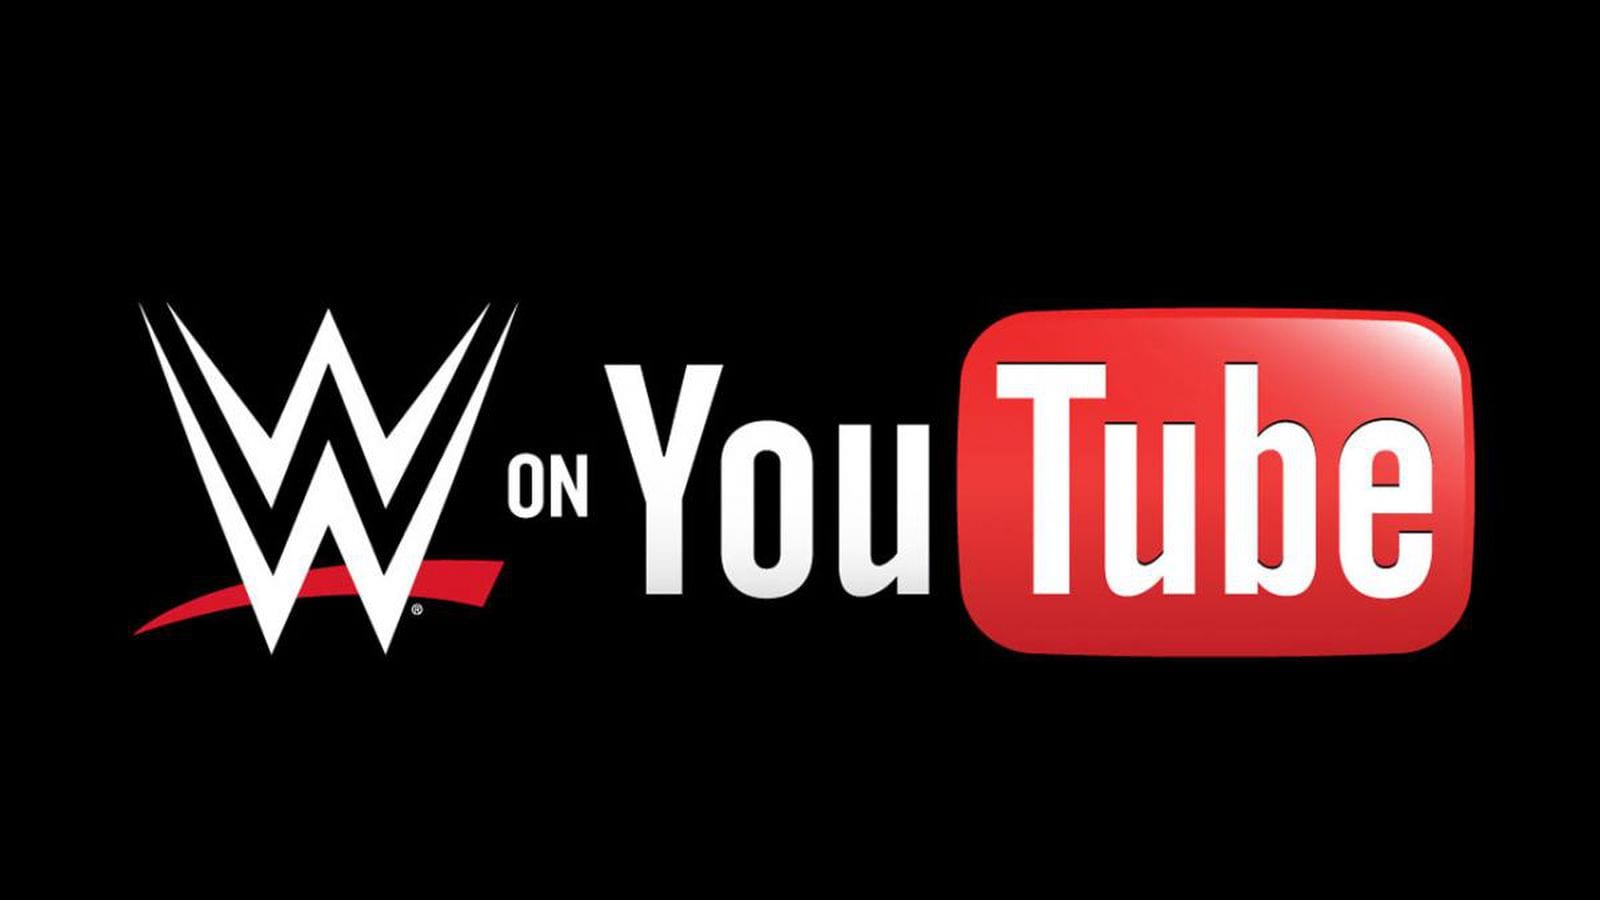 WWE تشكر الجماهير على تحقيق إنجاز كبير على اليوتيوب